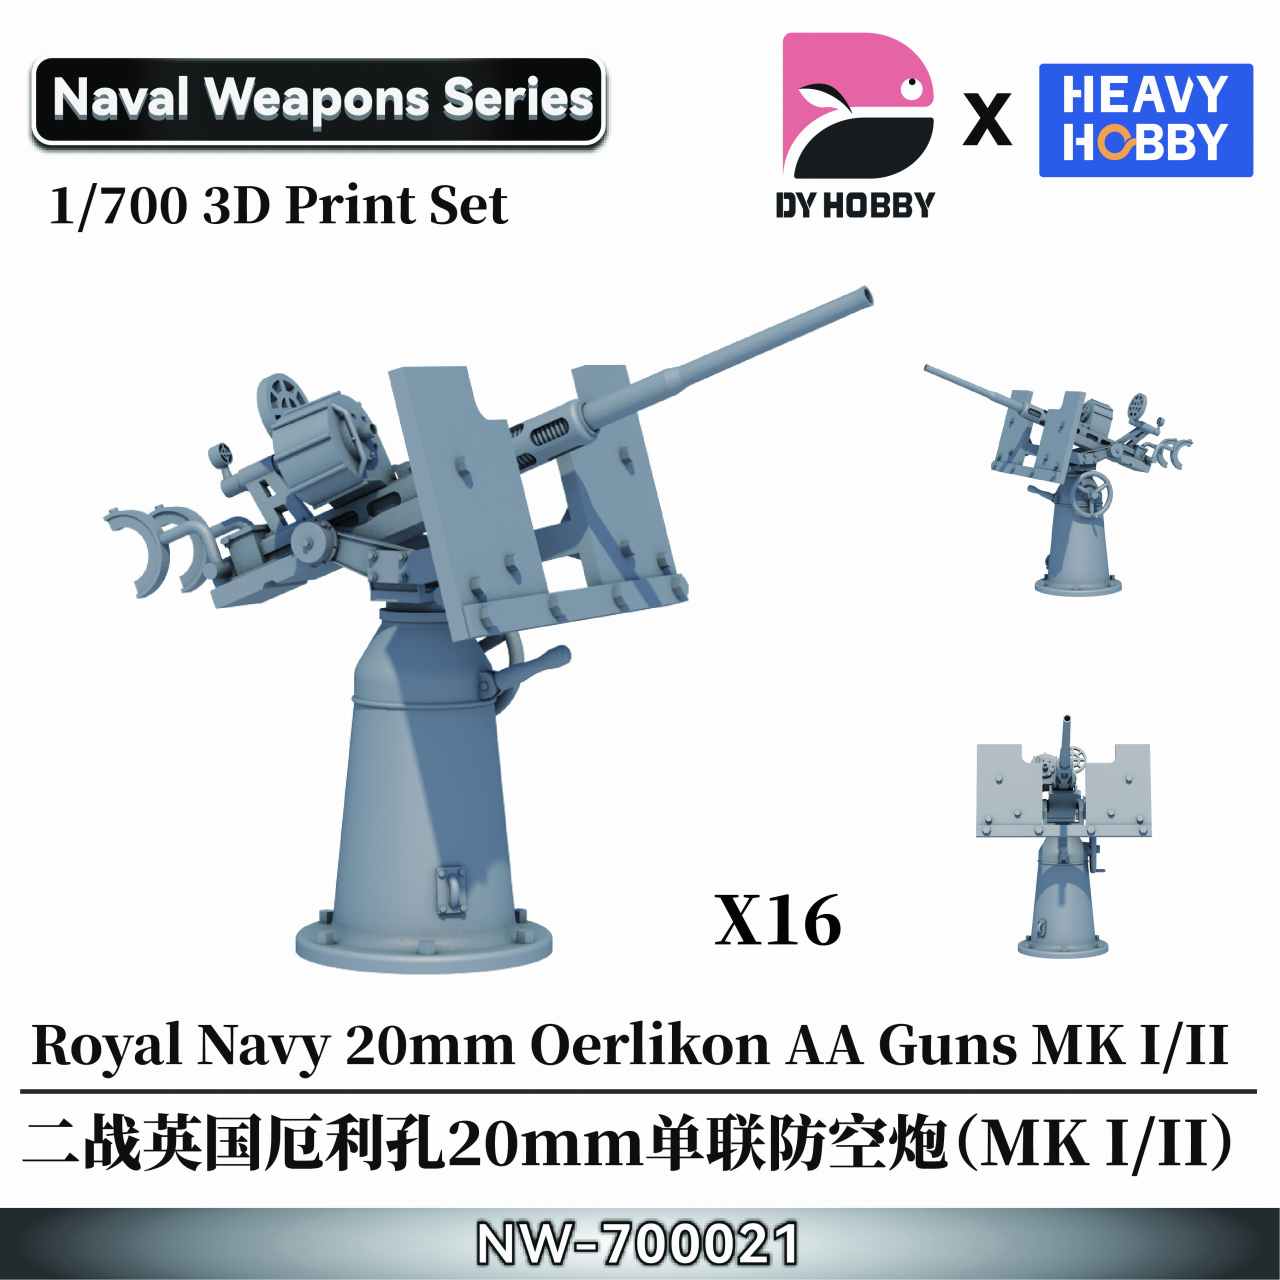 【新製品】NW-700021 1/700 WWII イギリス海軍 エリコン 20mm 単装機関砲 (MK I/II)